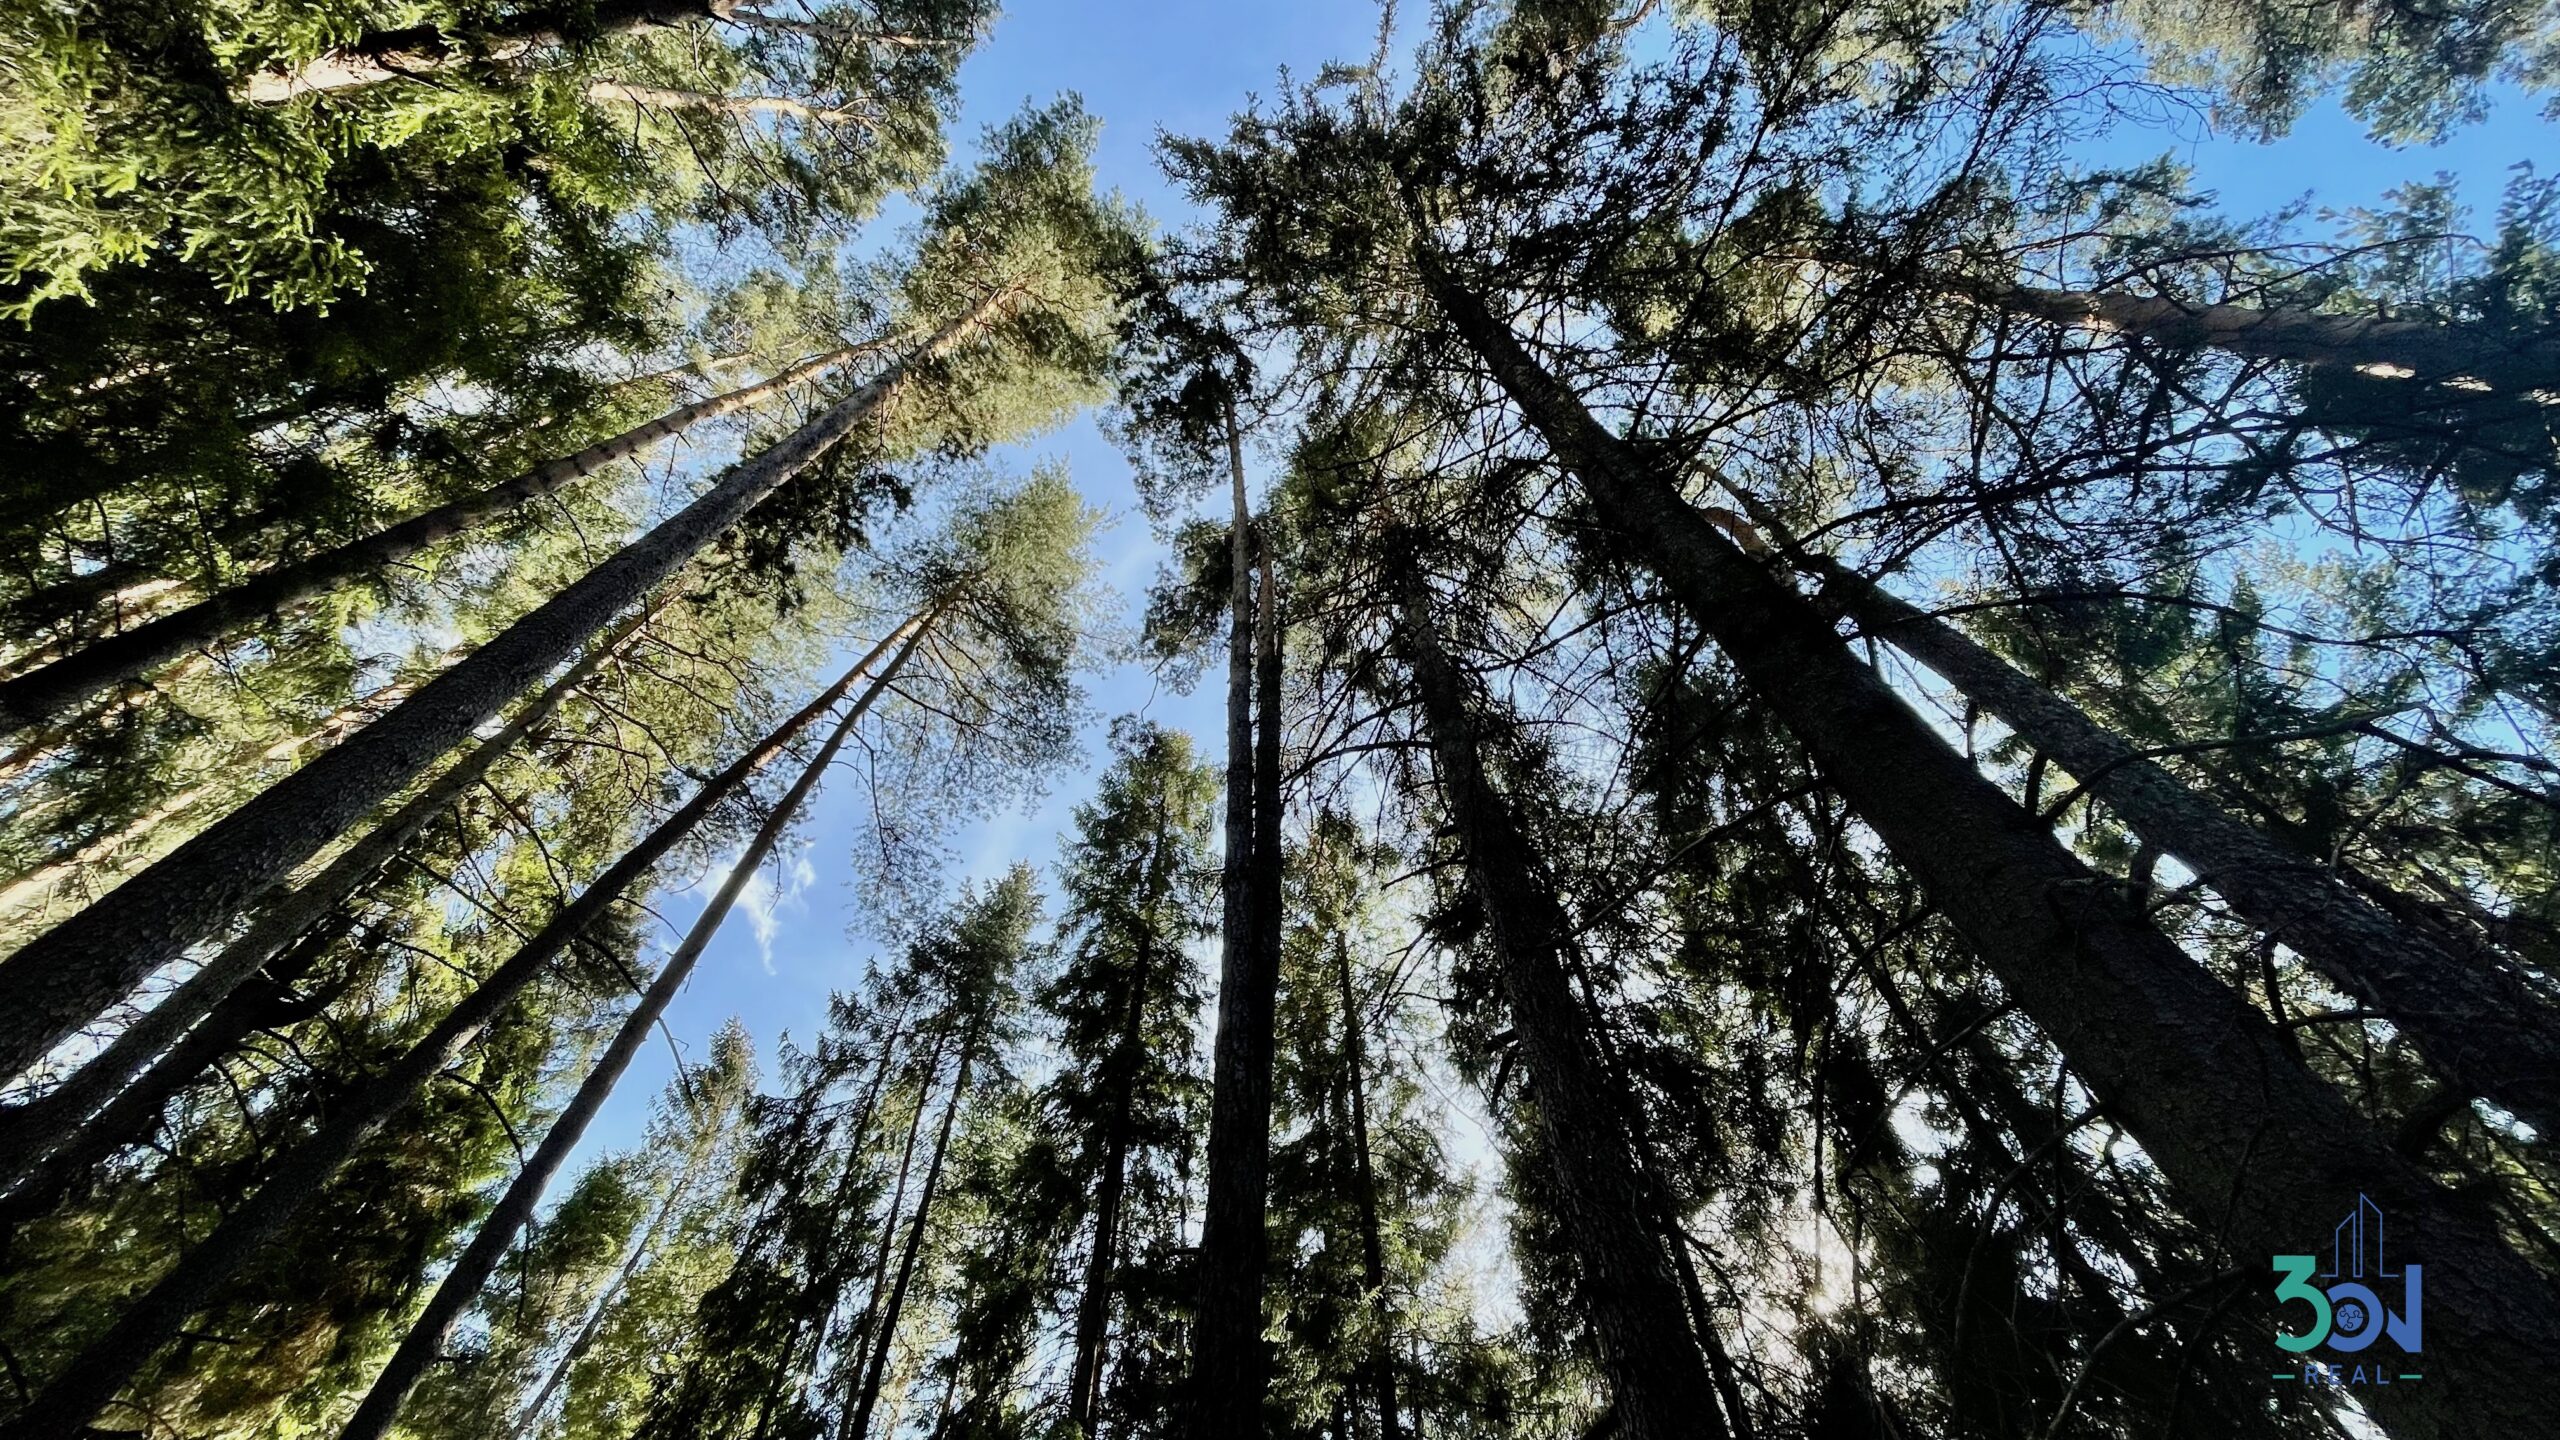 Les v osobnom výlučnom vlastníctve – Ľubica, Kežmarok